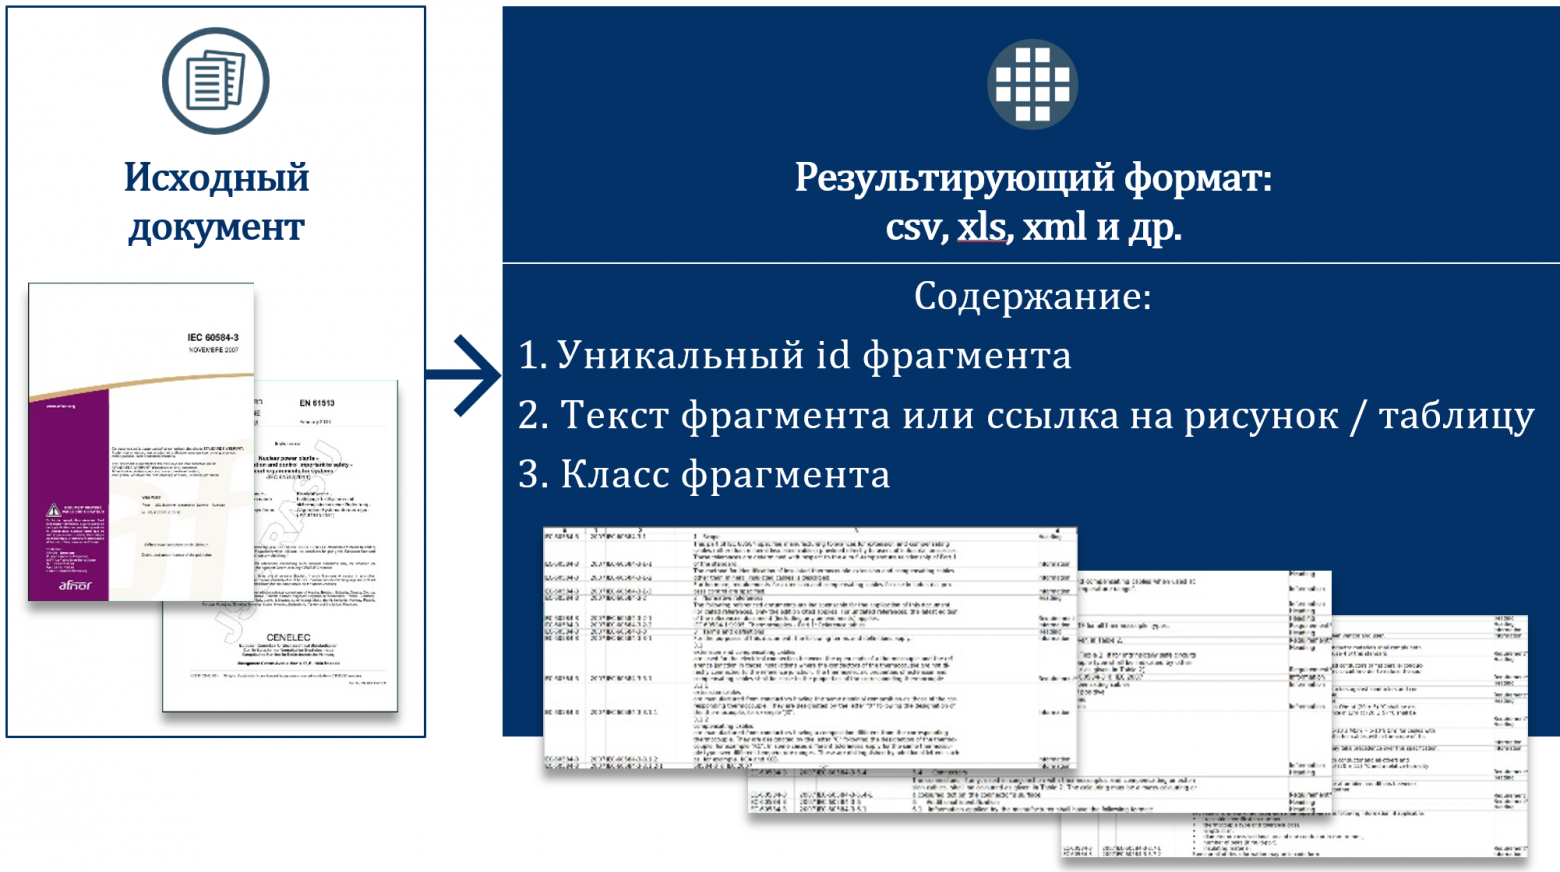 Результат оцифровки нормативной документации: текст разбит на фрагменты и компоненты с уникальными ID и классами. Источник: Росатом